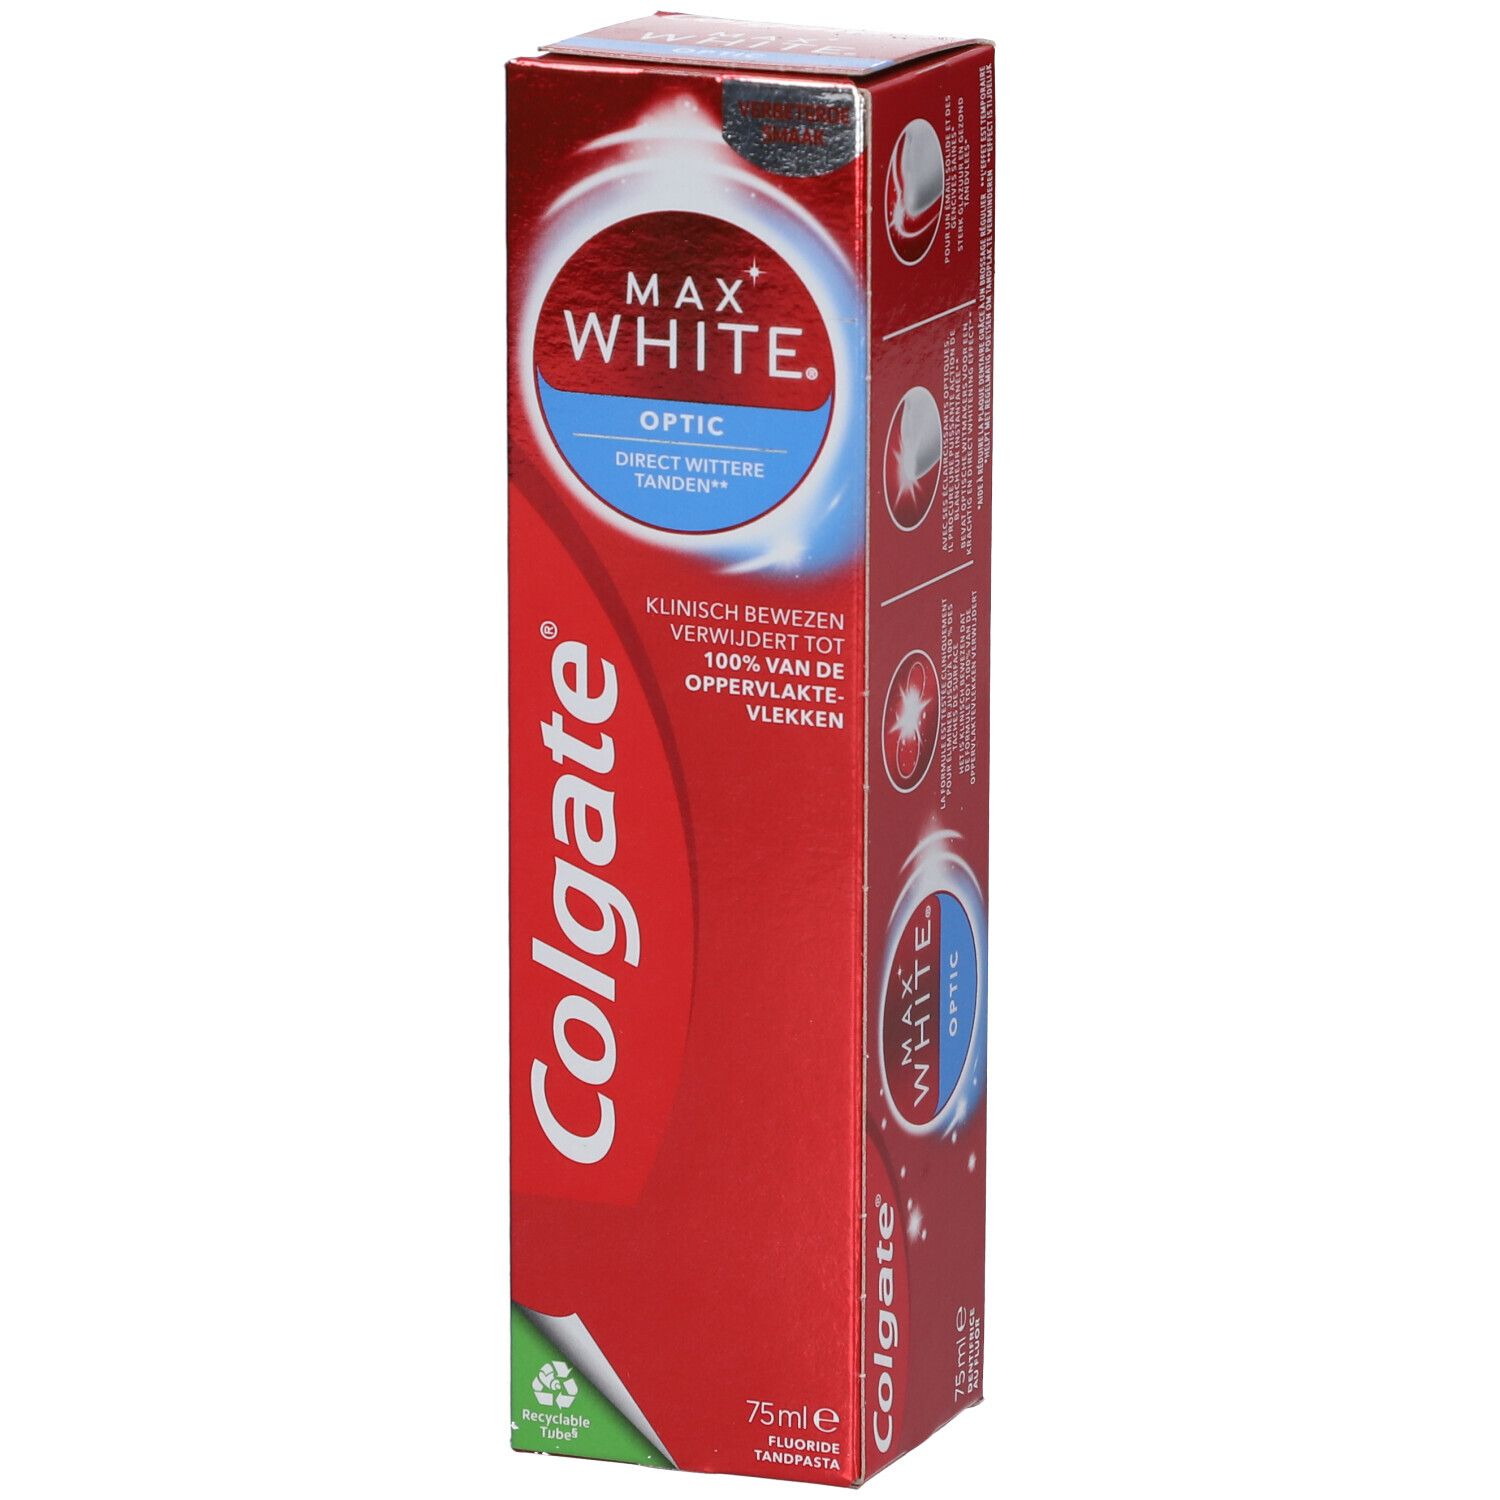 Crema Dental Colgate Max White x 90 gr - farmaciasdelpueblo